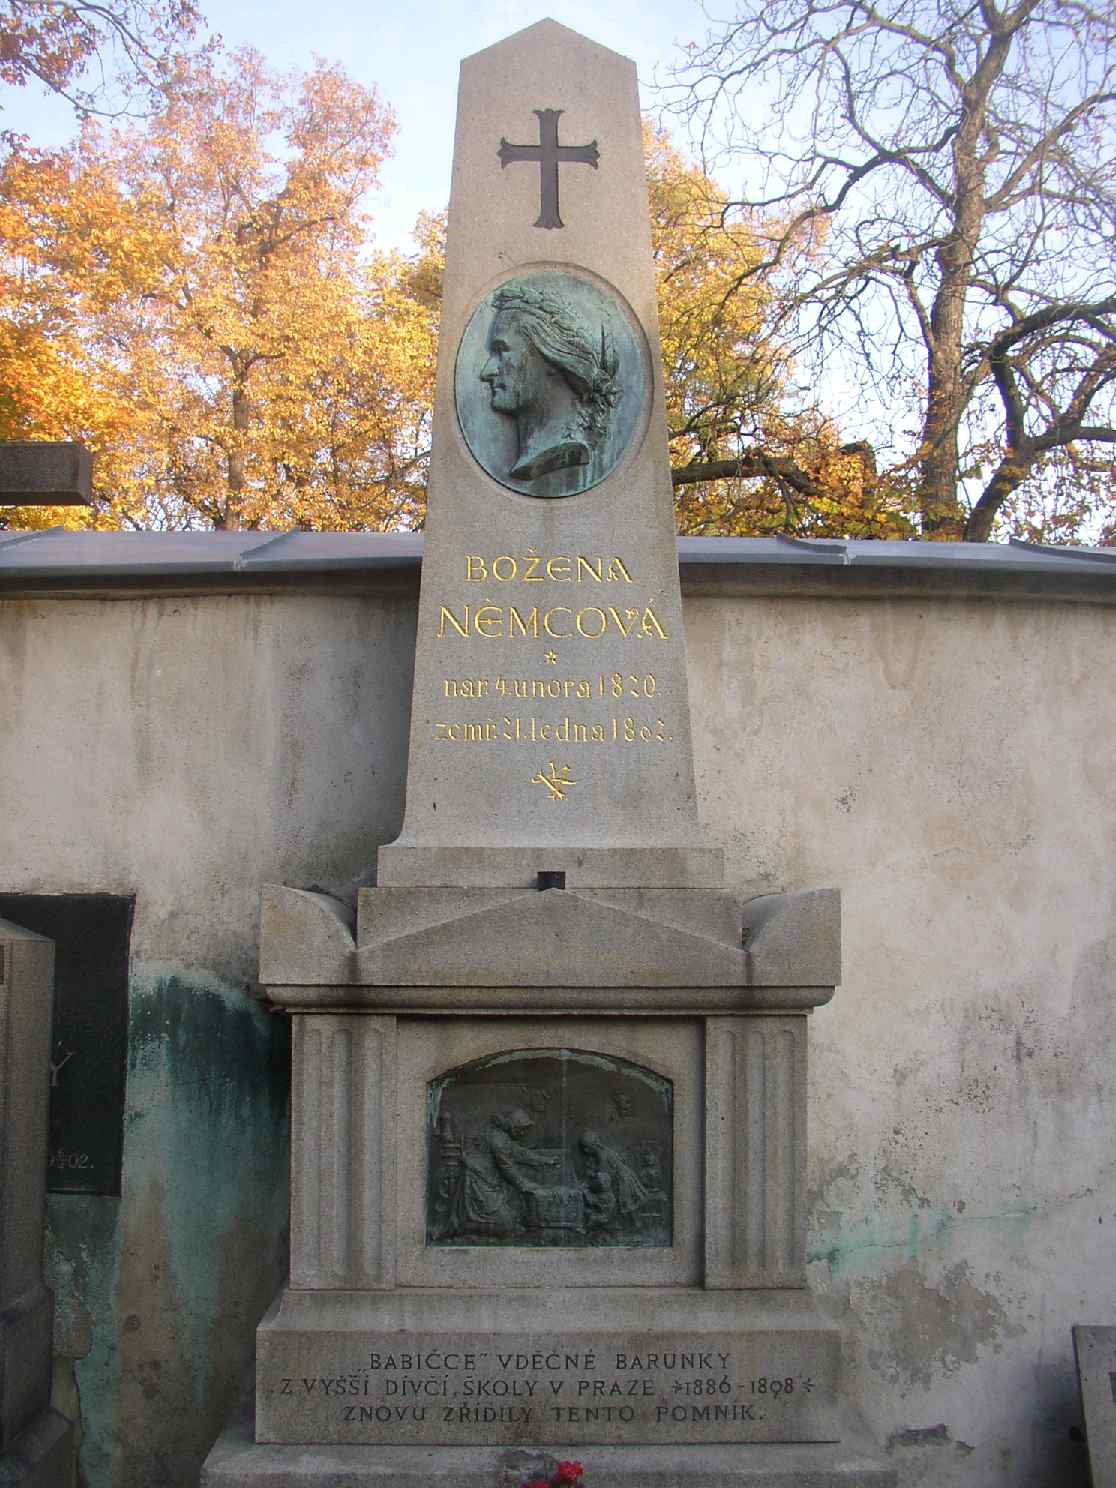 Bozena_Nemcova_grave_Vysehrad_Cemetery_Prague_CZ_811.jpg